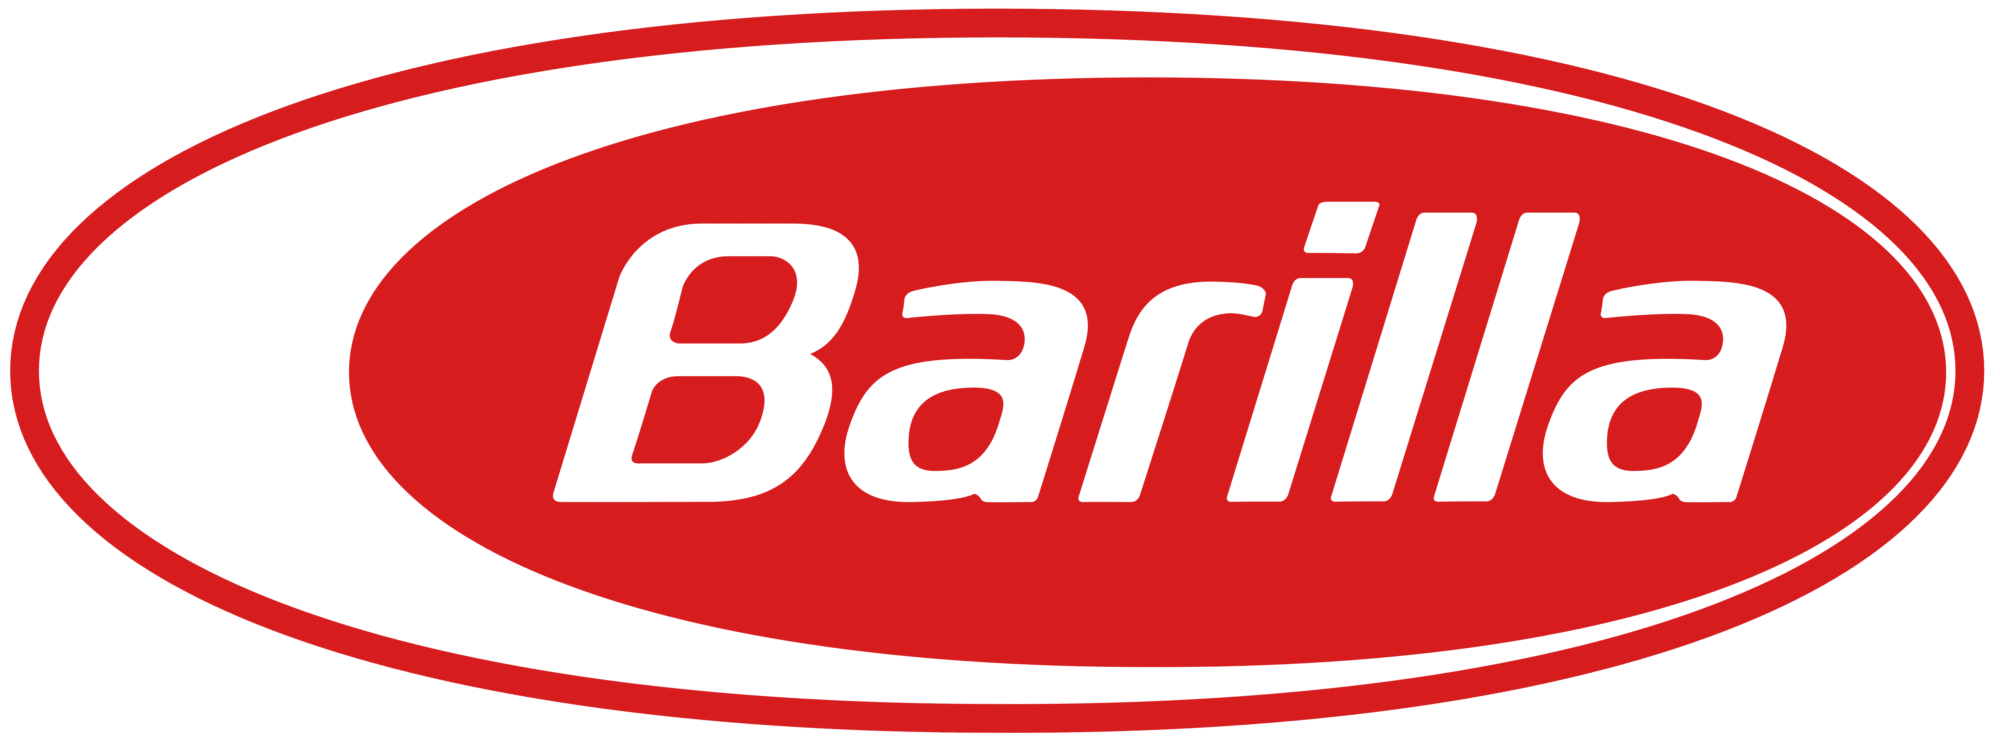 Barilla Pasta logo